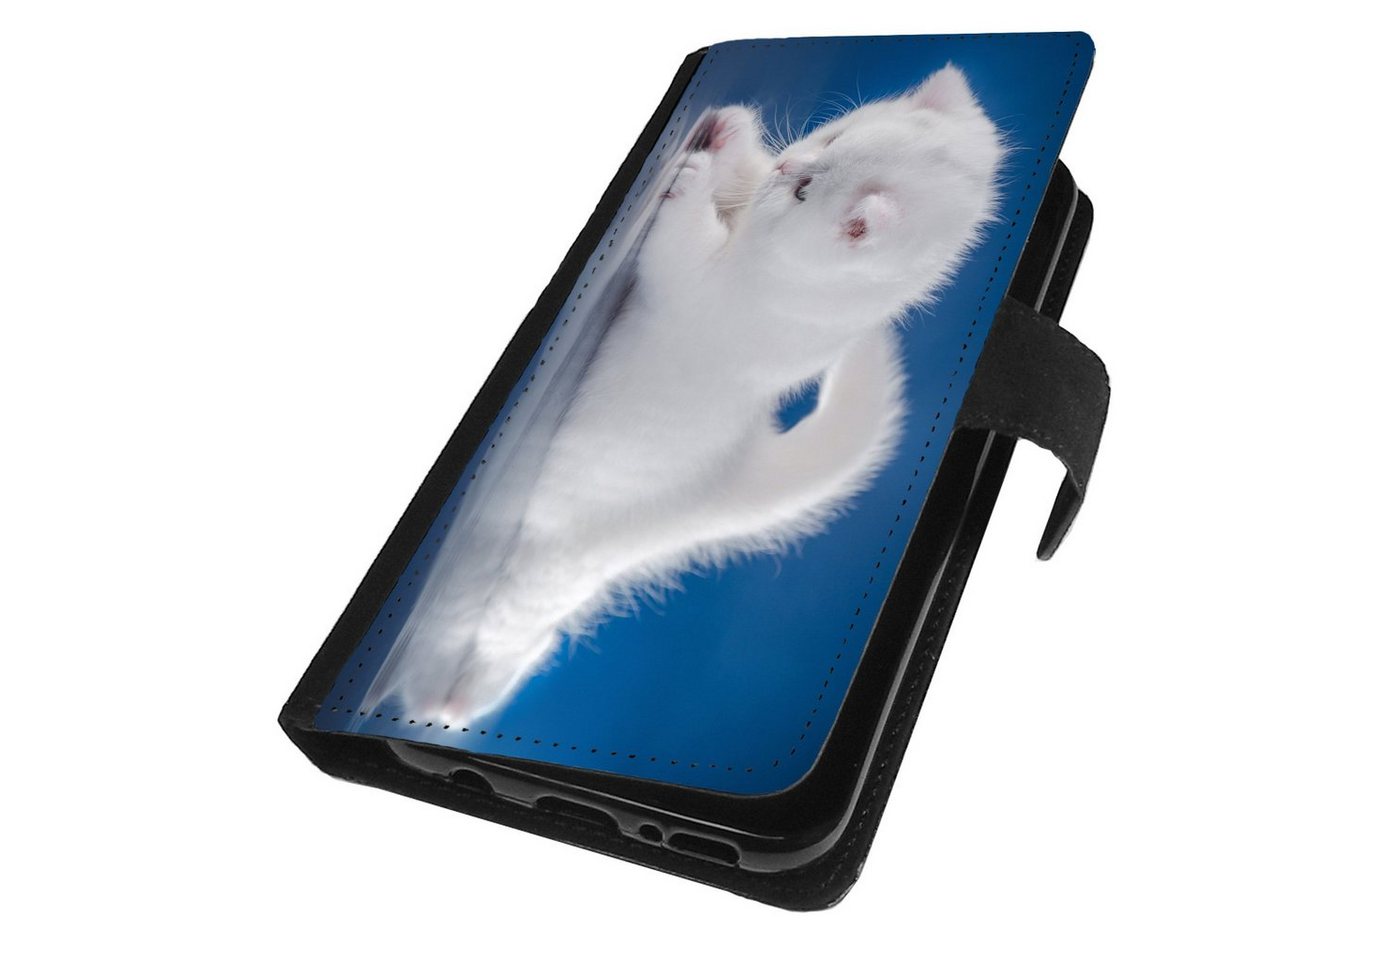 Traumhuelle Smartphone-Hülle MOTIV 121 Katze Weiß Hülle für iPhone Xiaomi Google Huawei Motorola, Schutz Handy Tasche Etui Case Klapphülle Cover Schutzhülle von Traumhuelle